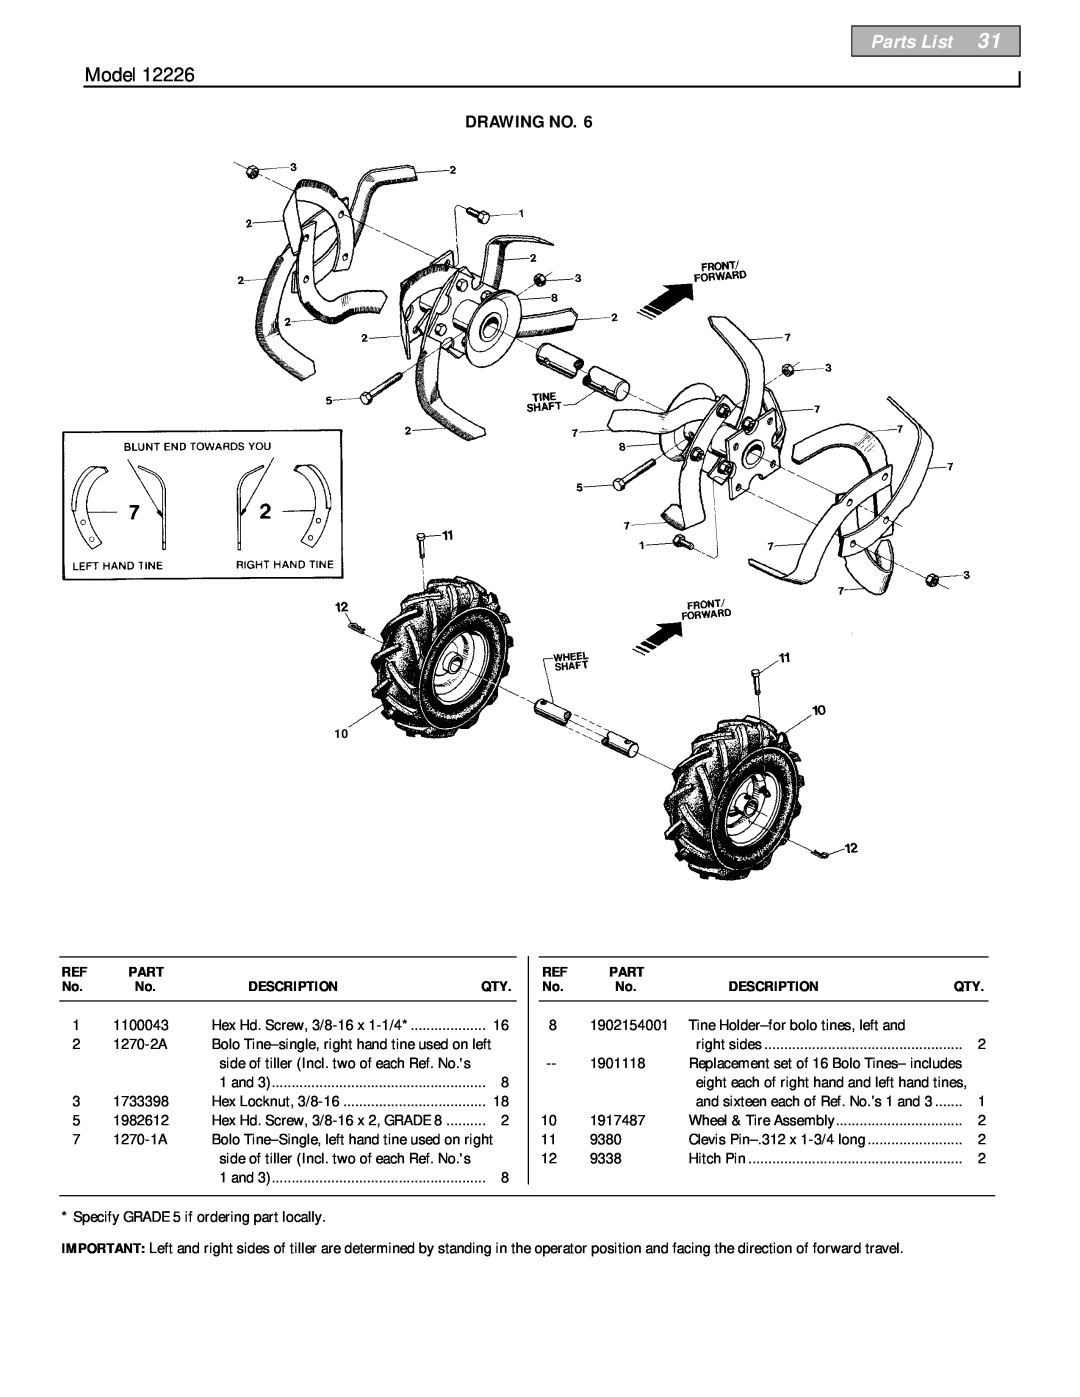 Bolens 12226 owner manual Parts List, Model, Drawing No, Description 